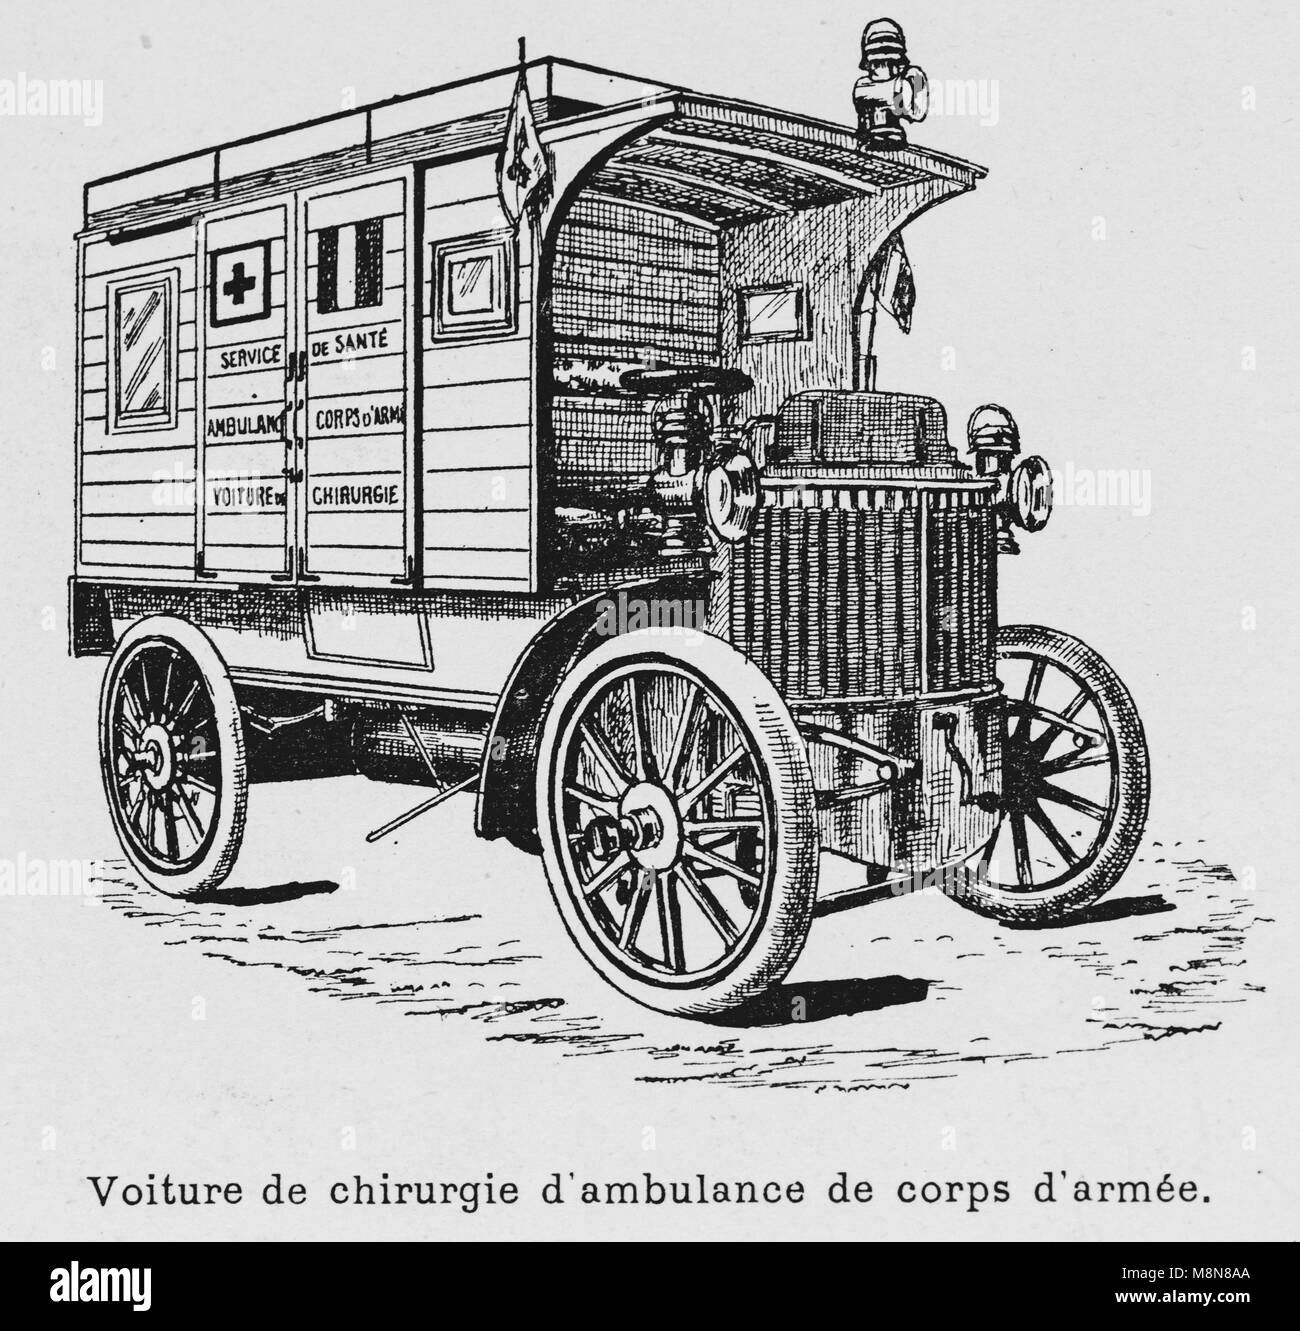 Militärische Fahrzeuge während der 1900 französische militärische Übung, Ambulanz, Bild aus der Französischen Wochenzeitung l'Illustration, 22. September 1900 Stockfoto